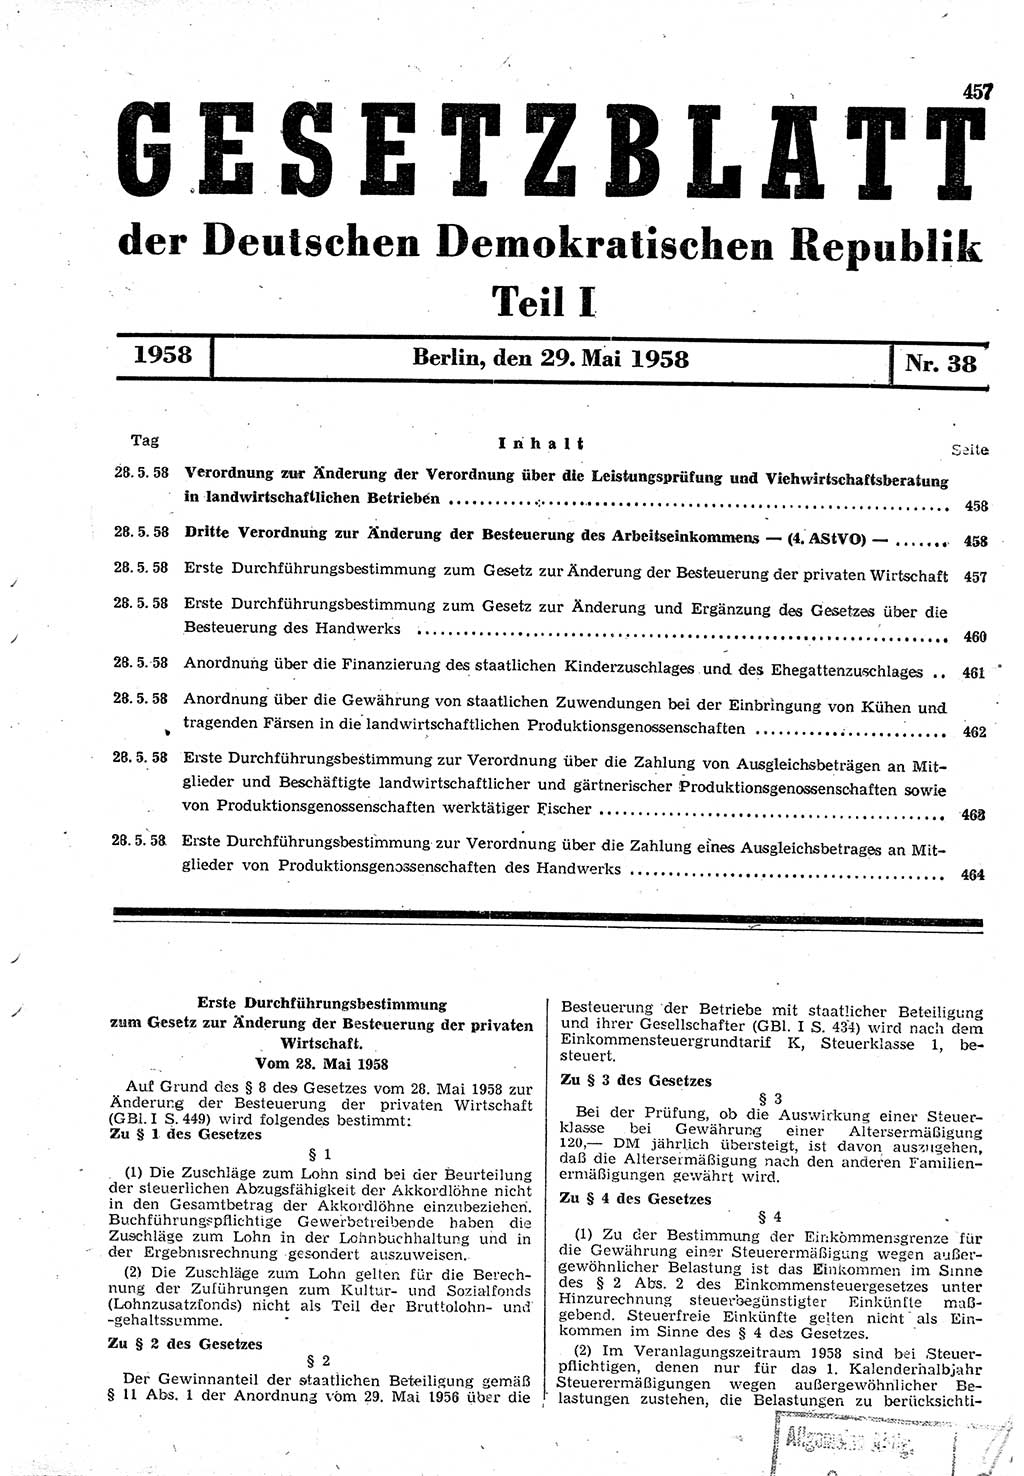 Gesetzblatt (GBl.) der Deutschen Demokratischen Republik (DDR) Teil Ⅰ 1958, Seite 457 (GBl. DDR Ⅰ 1958, S. 457)